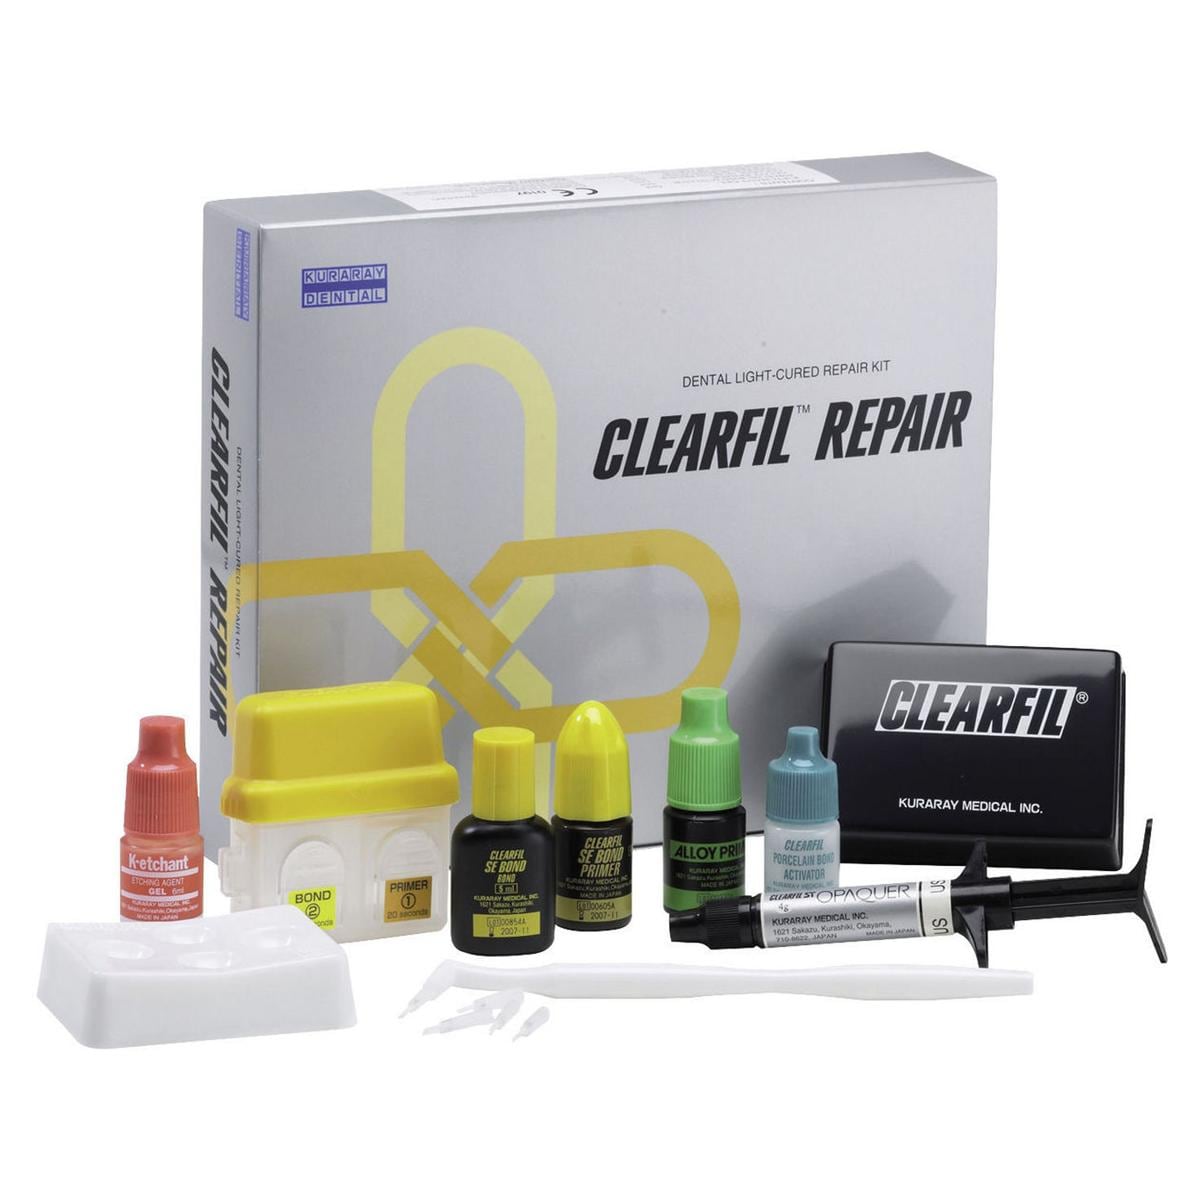 CLEARFIL REPAIR - Kit